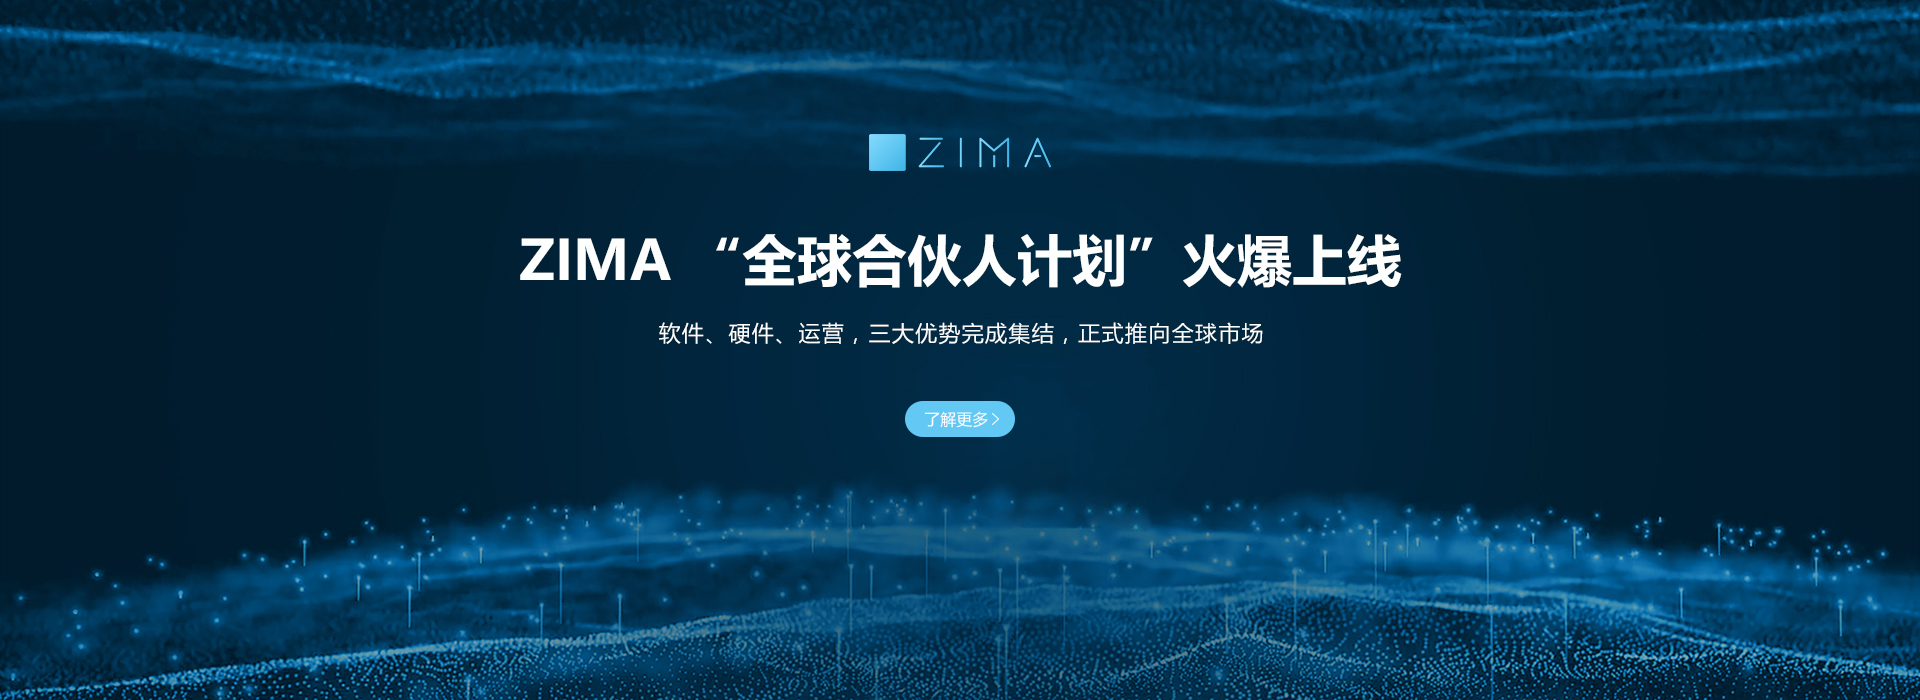 ZIMA希码科技为全球用户提供全场景全品类的自动售货机、行业解决方案及运营服务